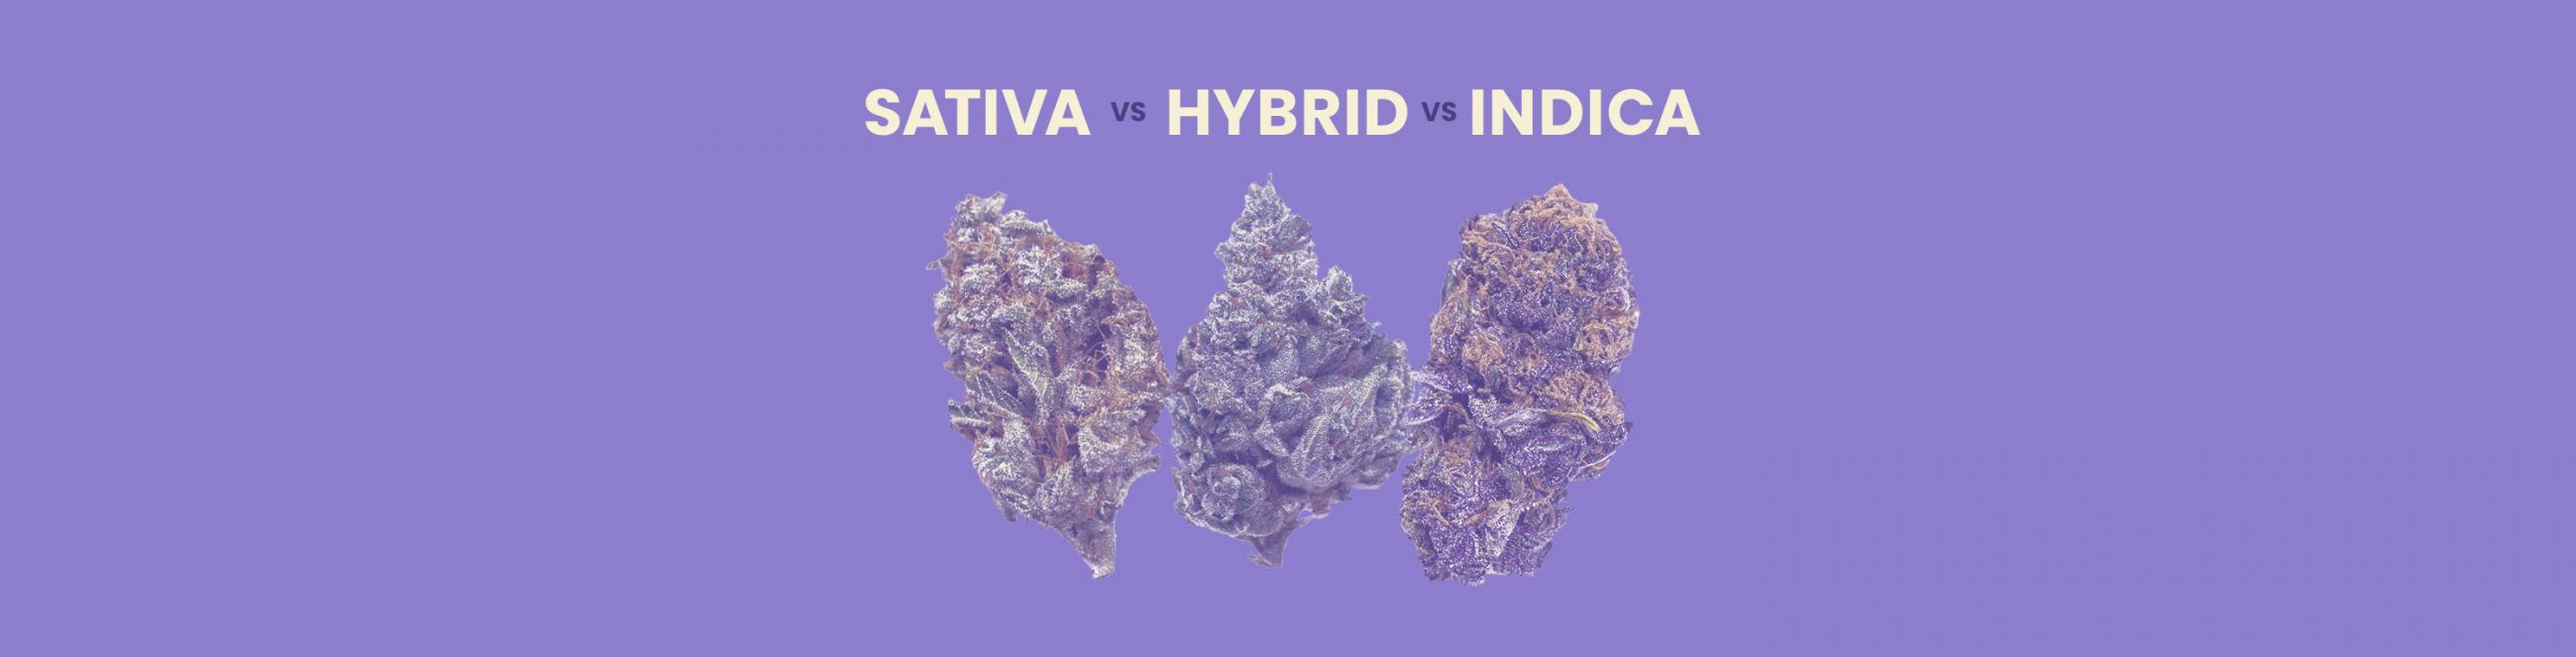 Sativa vs. Indica vs. Hybrid Strains: The Ultimate Comparison Guide 